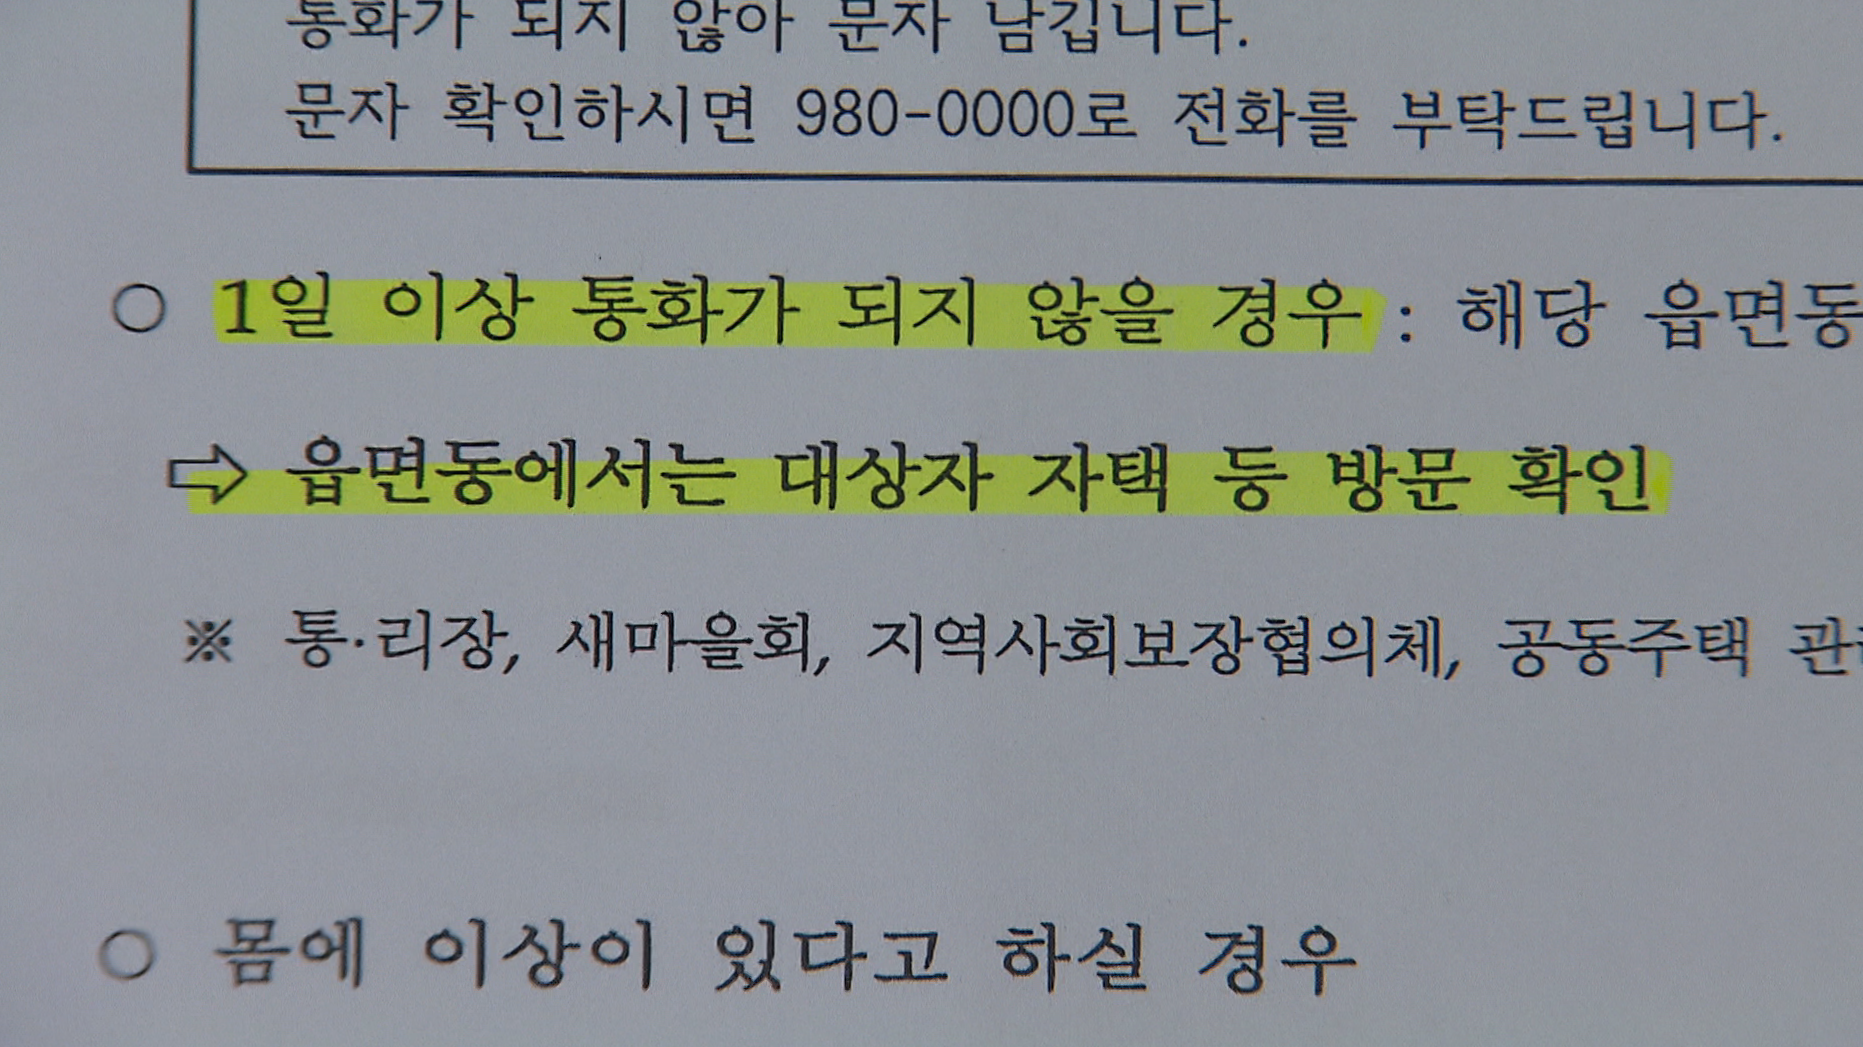 경기도 김포시의 75살 이상 코로나19 예방접종 모니터링 실시계획